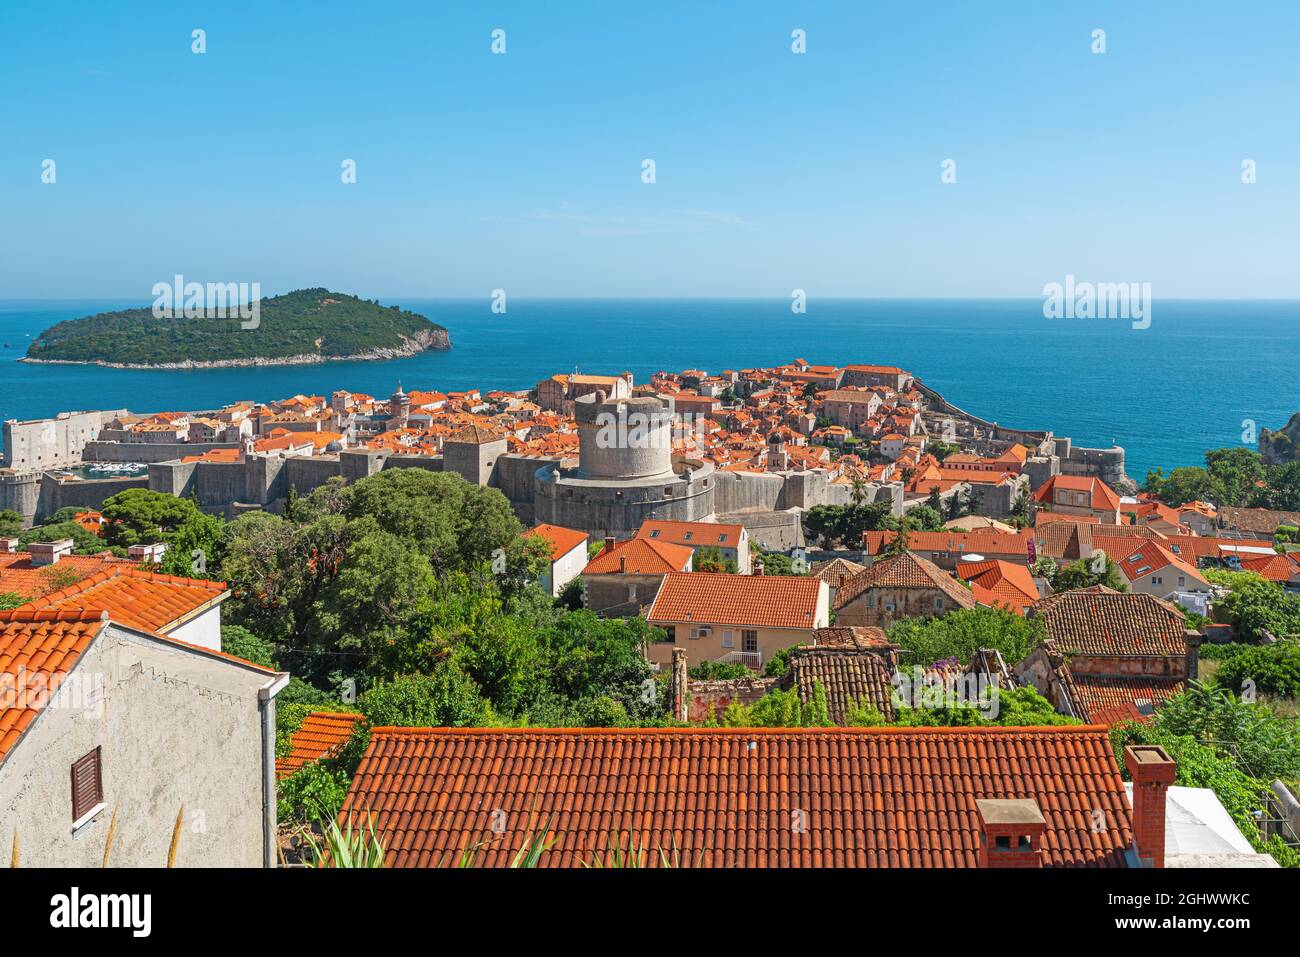 Città vecchia di Dubrovnik in Croazia con tetti arancioni, mura cittadine, isola di Lokrum e mare Adriatico. Destinazione estiva in Europa Foto Stock